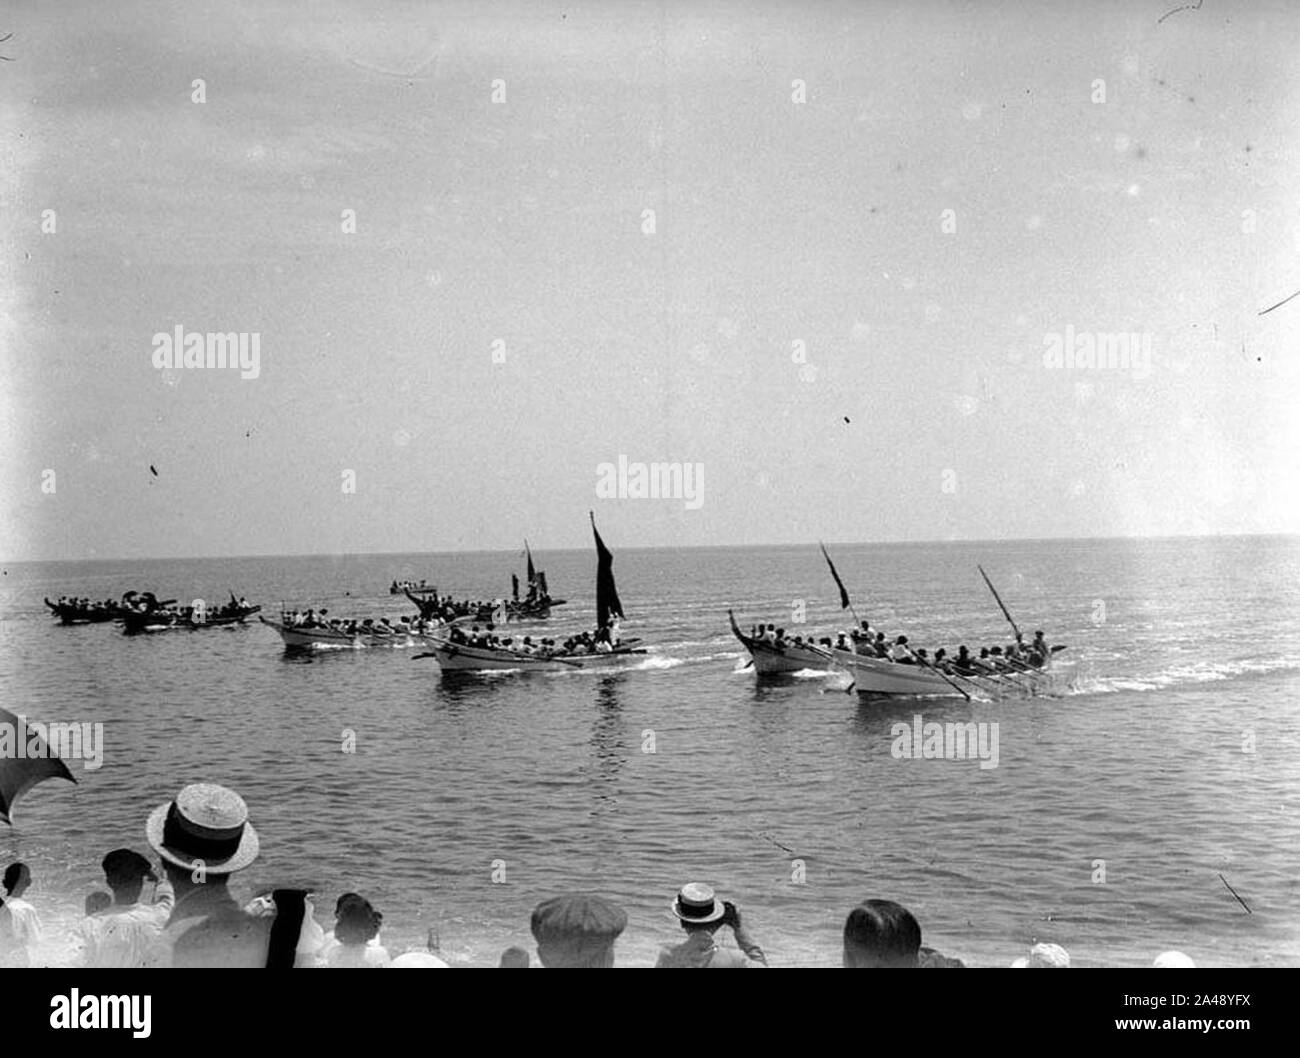 Festa de S'amorra amorra en Lloret, regata amb els llaguts de pesca (AFCEC RIBASV C 2716) (cropped). Stock Photo